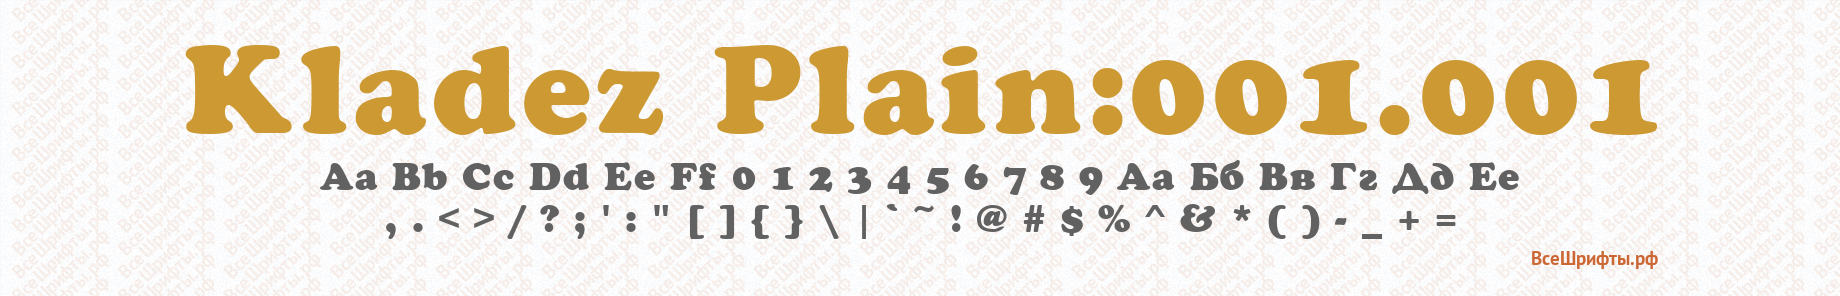 Шрифт Kladez Plain:001.001